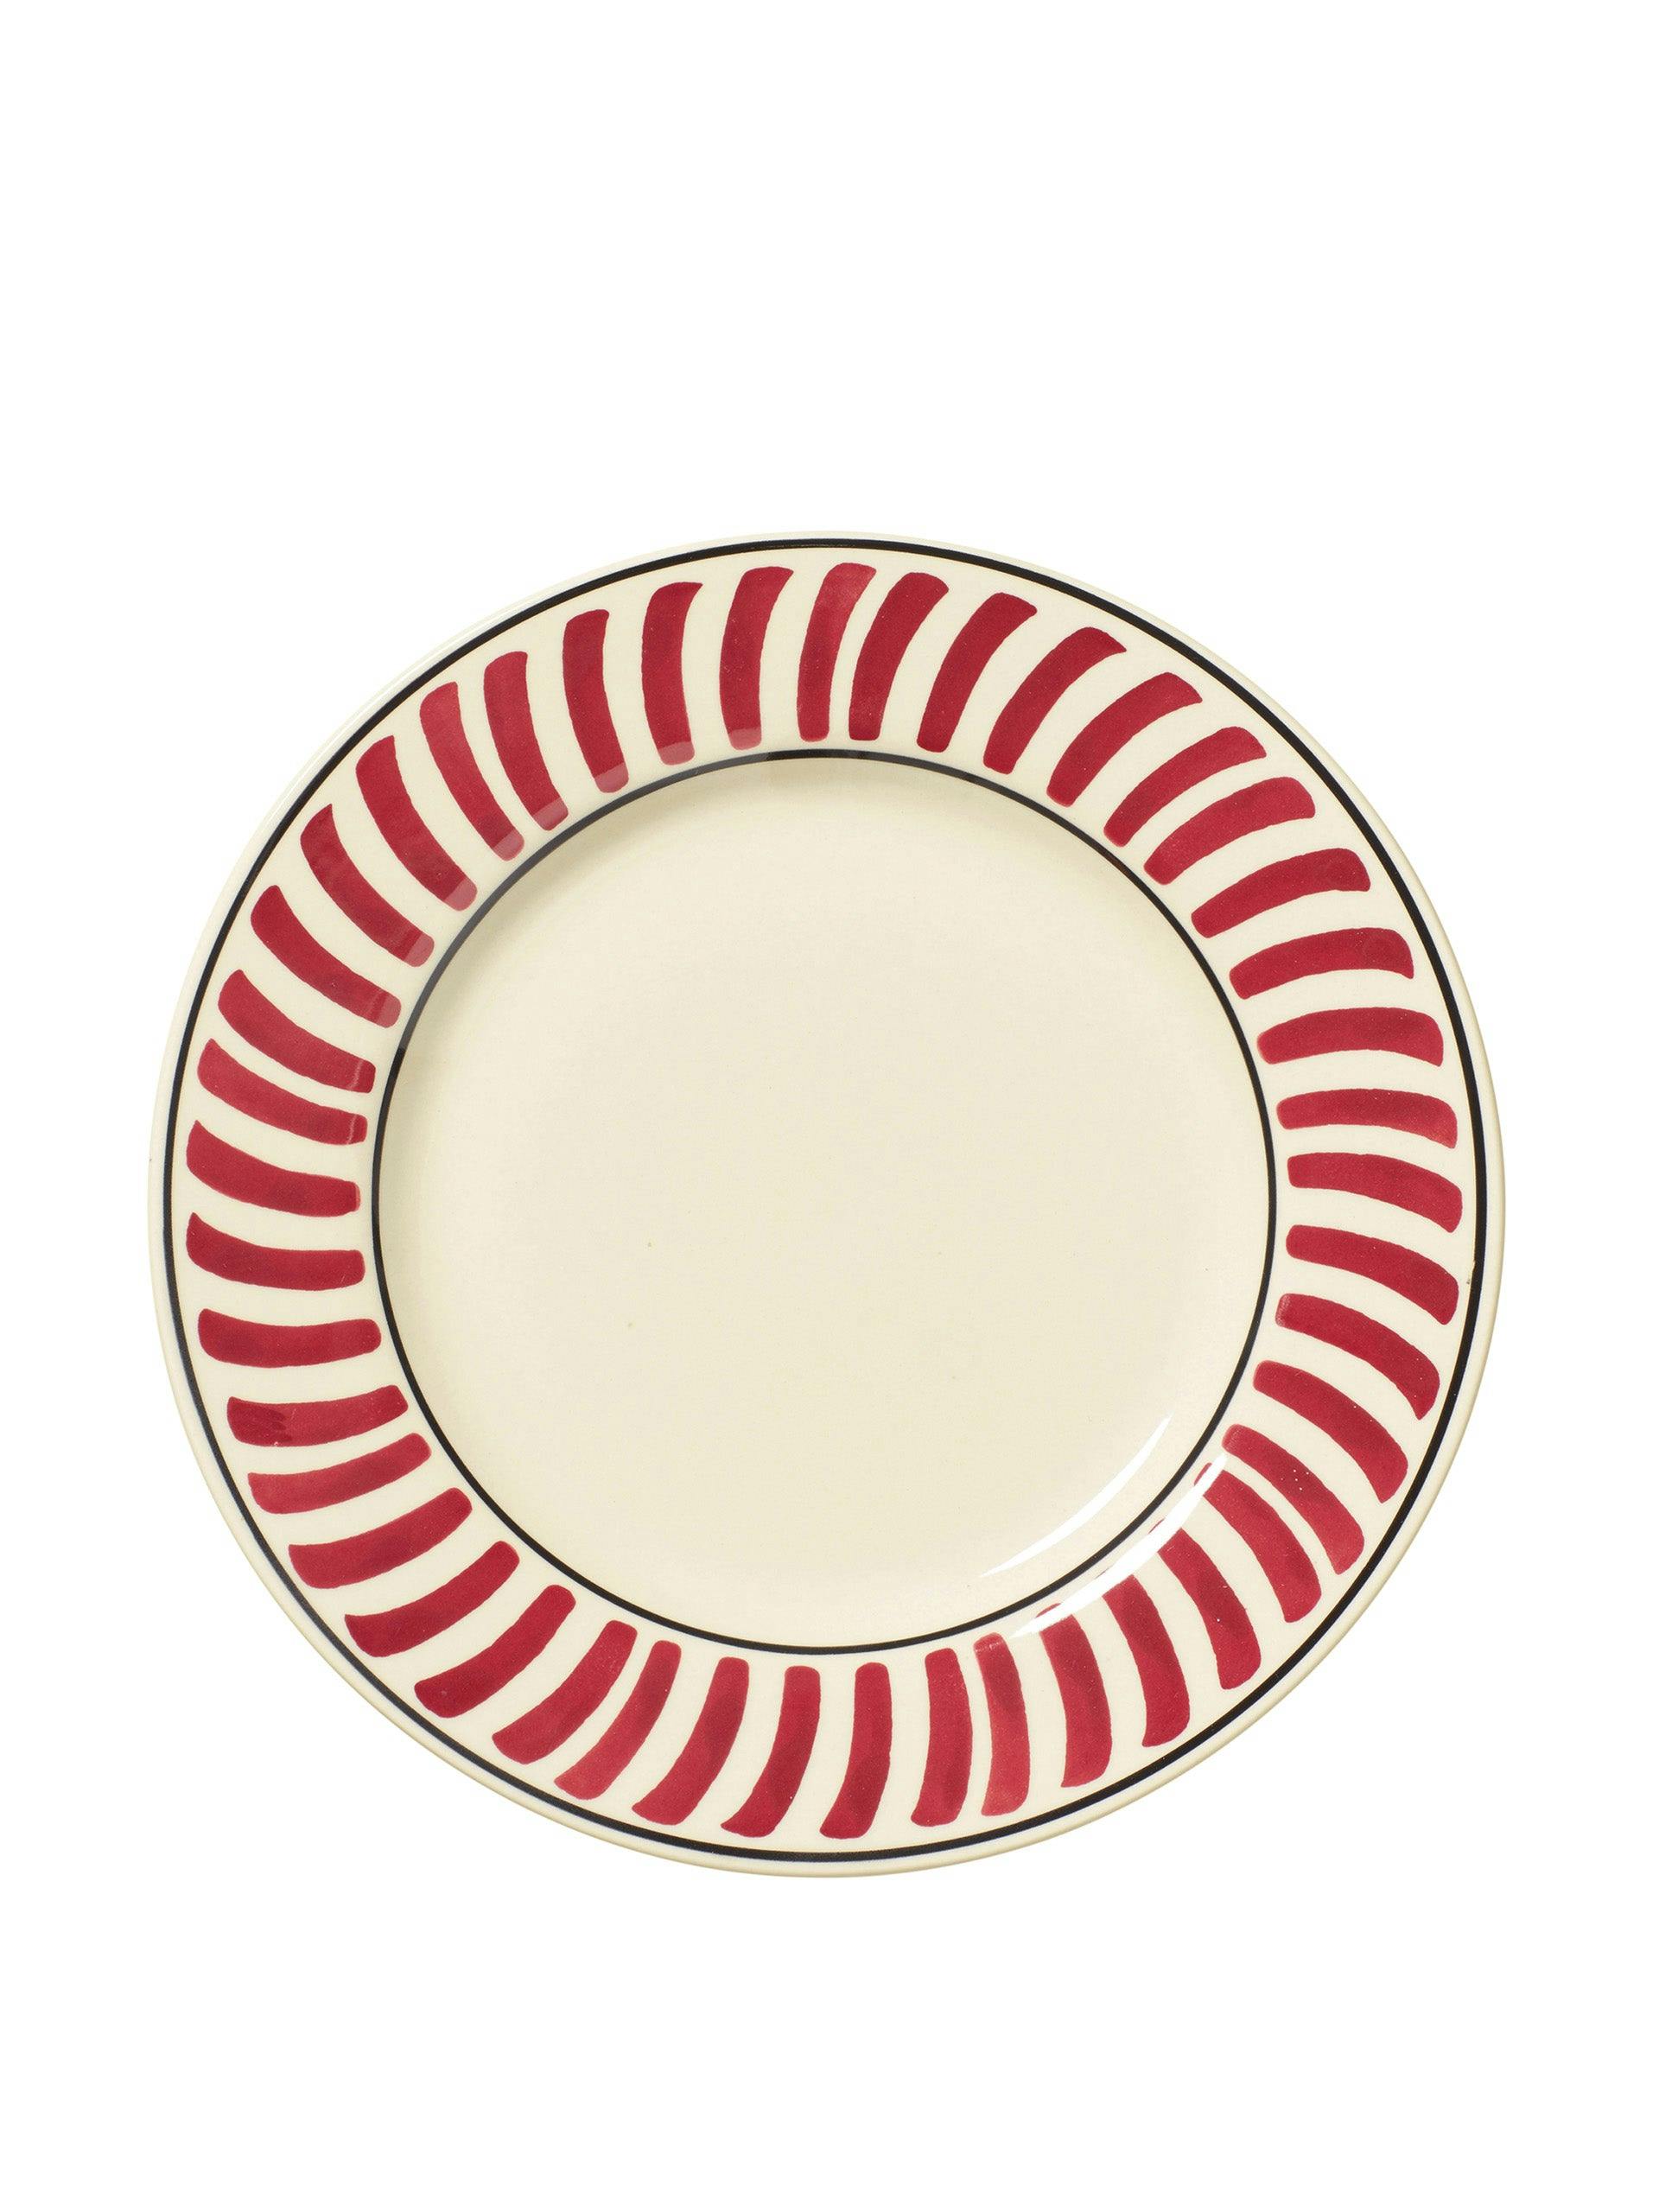 Kintaro red white side plates (set of 4)